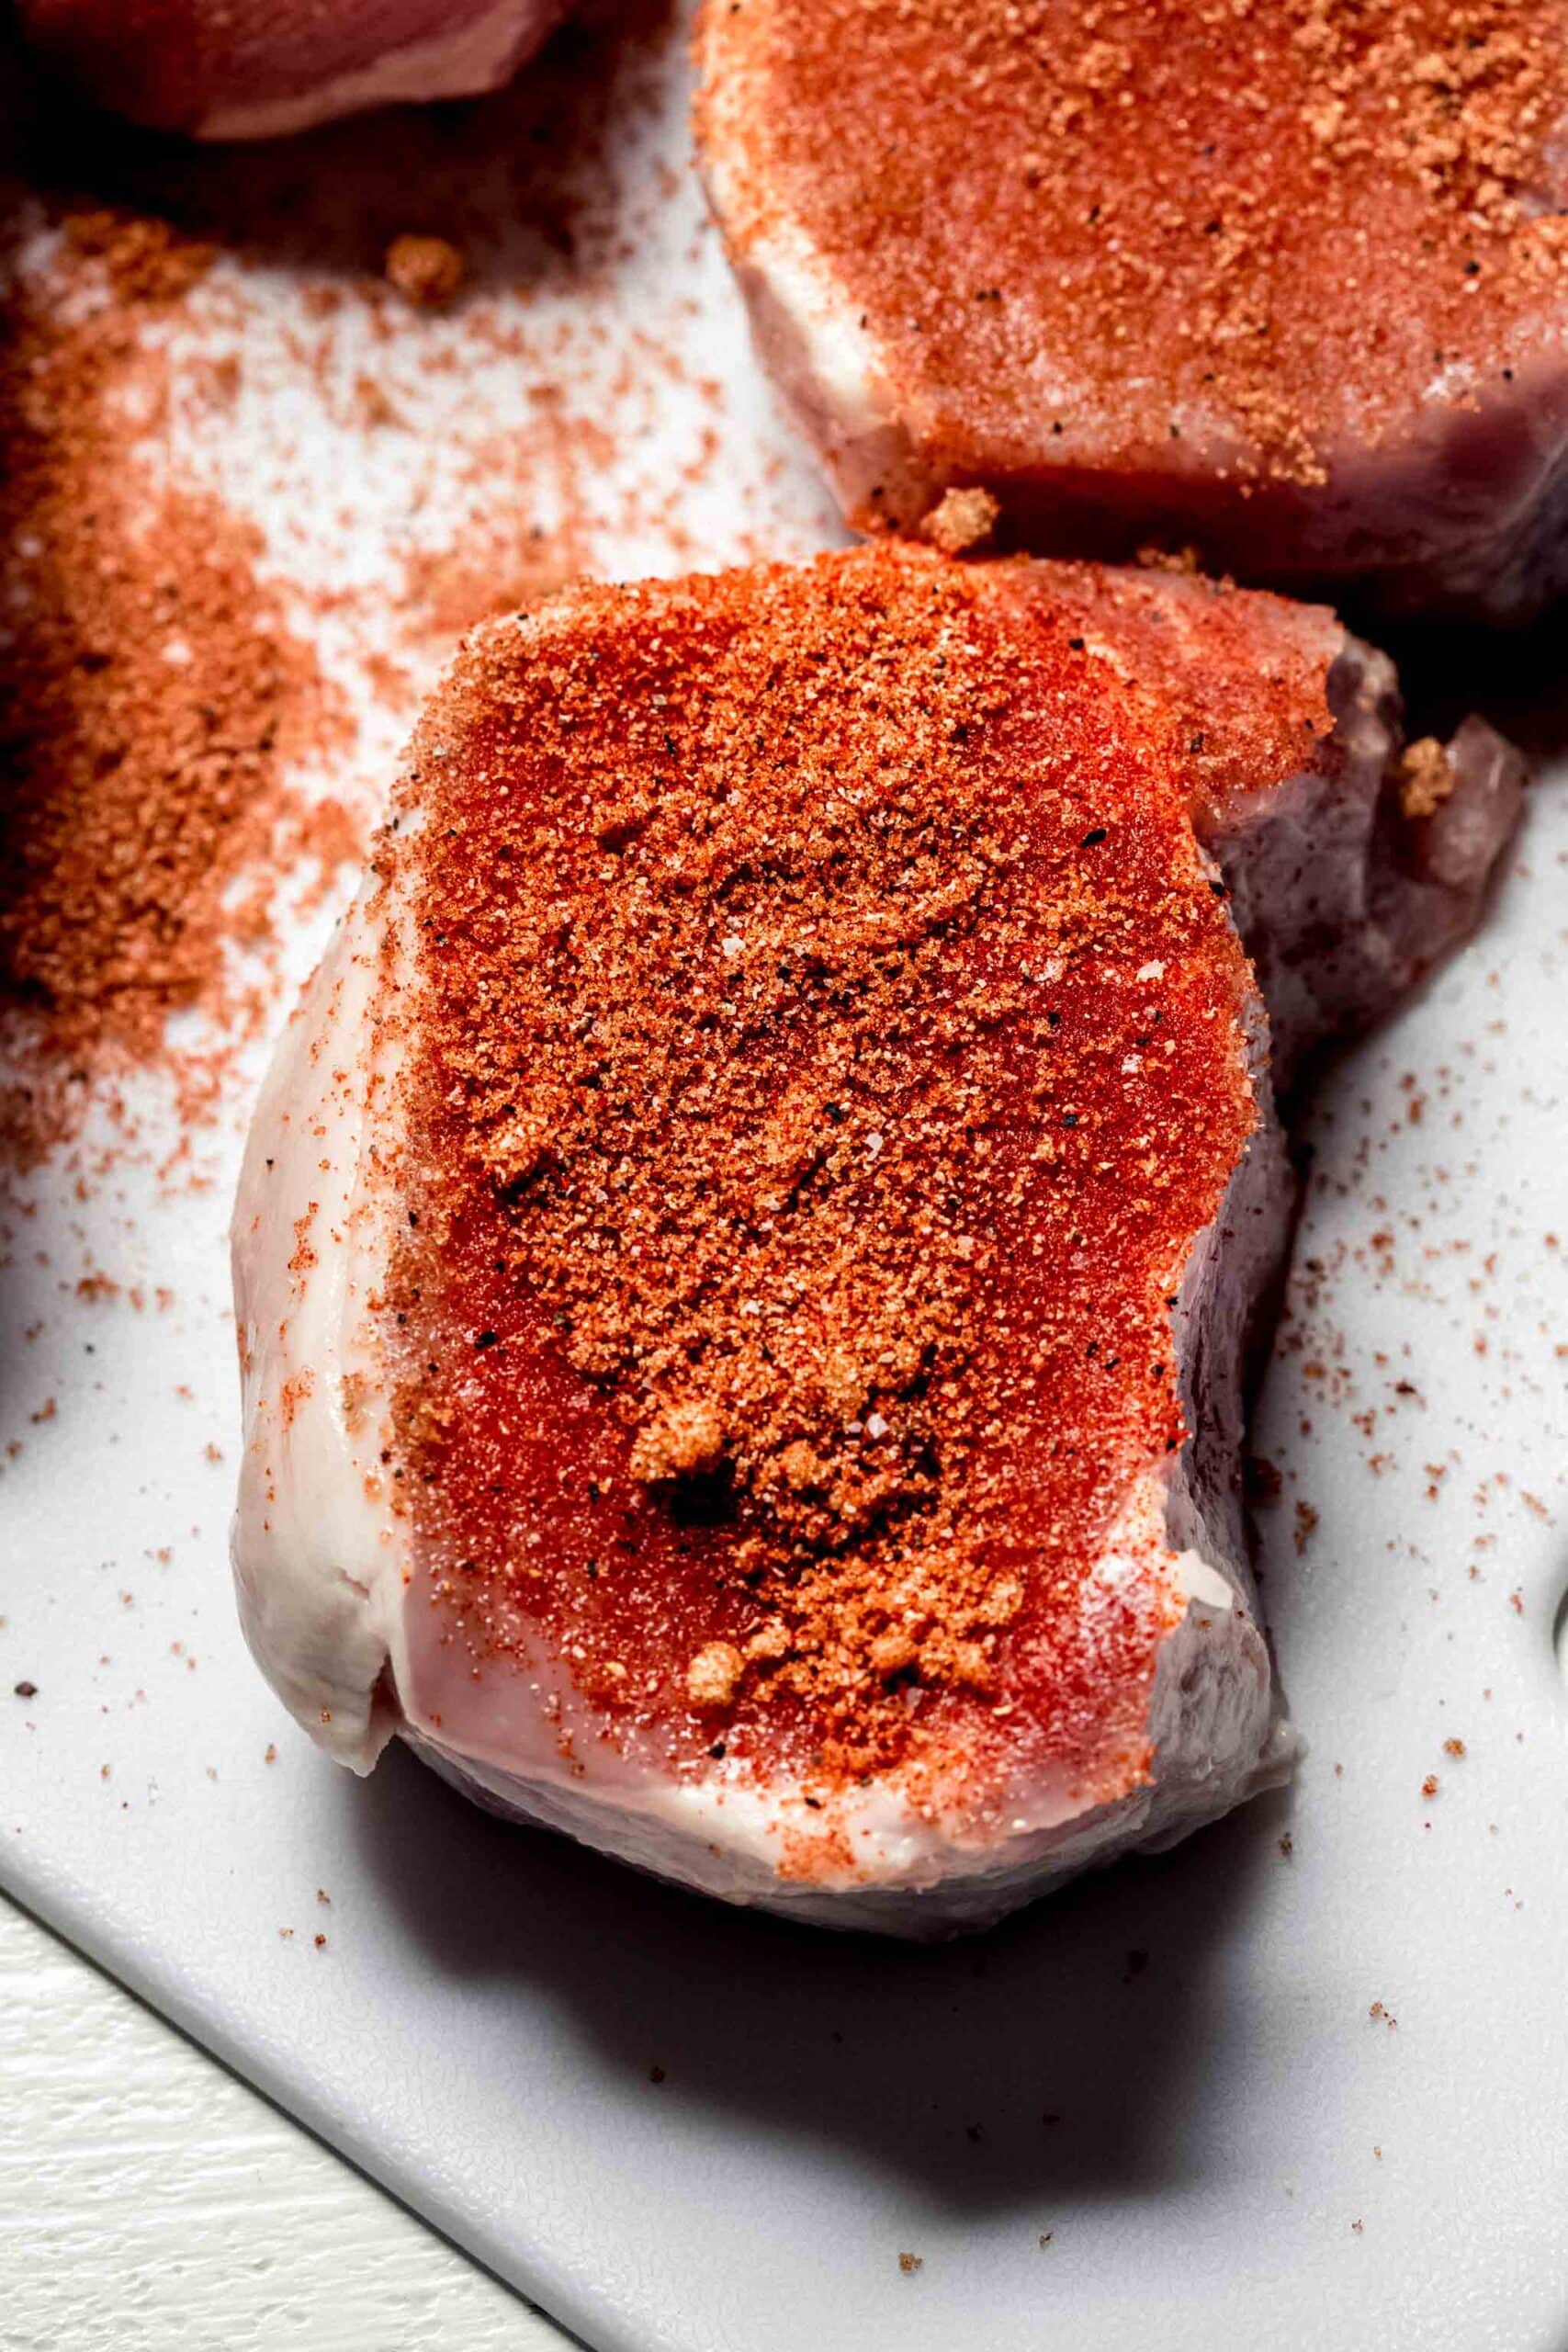 Uncooked Pork chop sprinkled with seasonings.